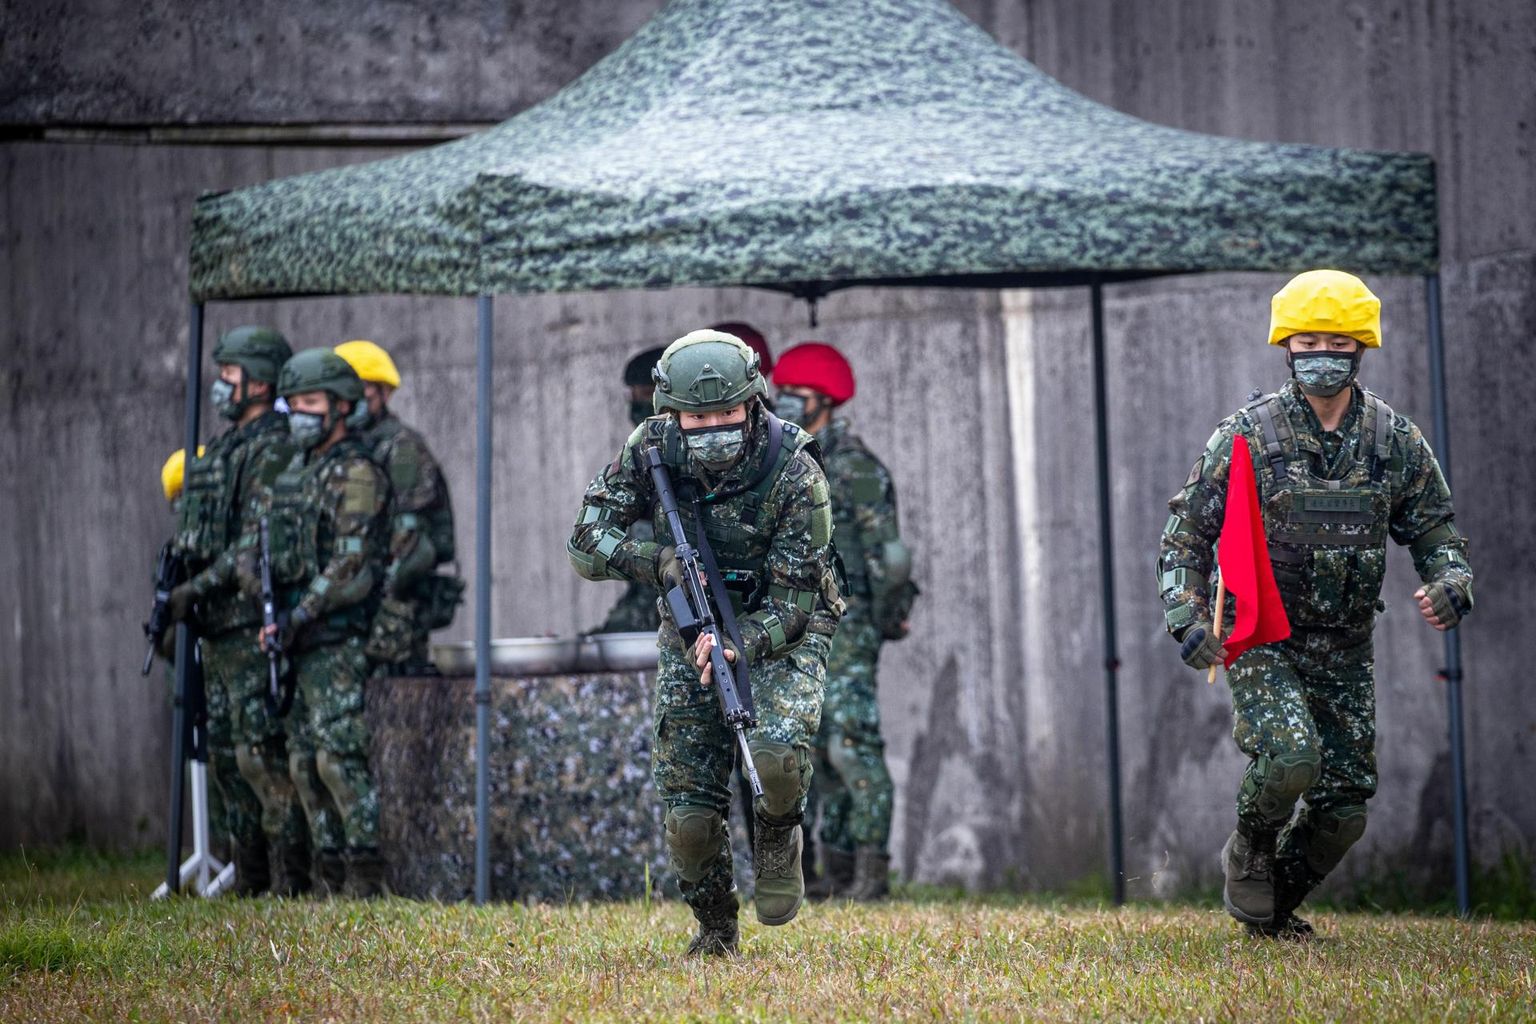 Taiwani sõdurid õppusel. USA on lubanud saata paarsada sõdurit Taiwani kolleege koolitama.